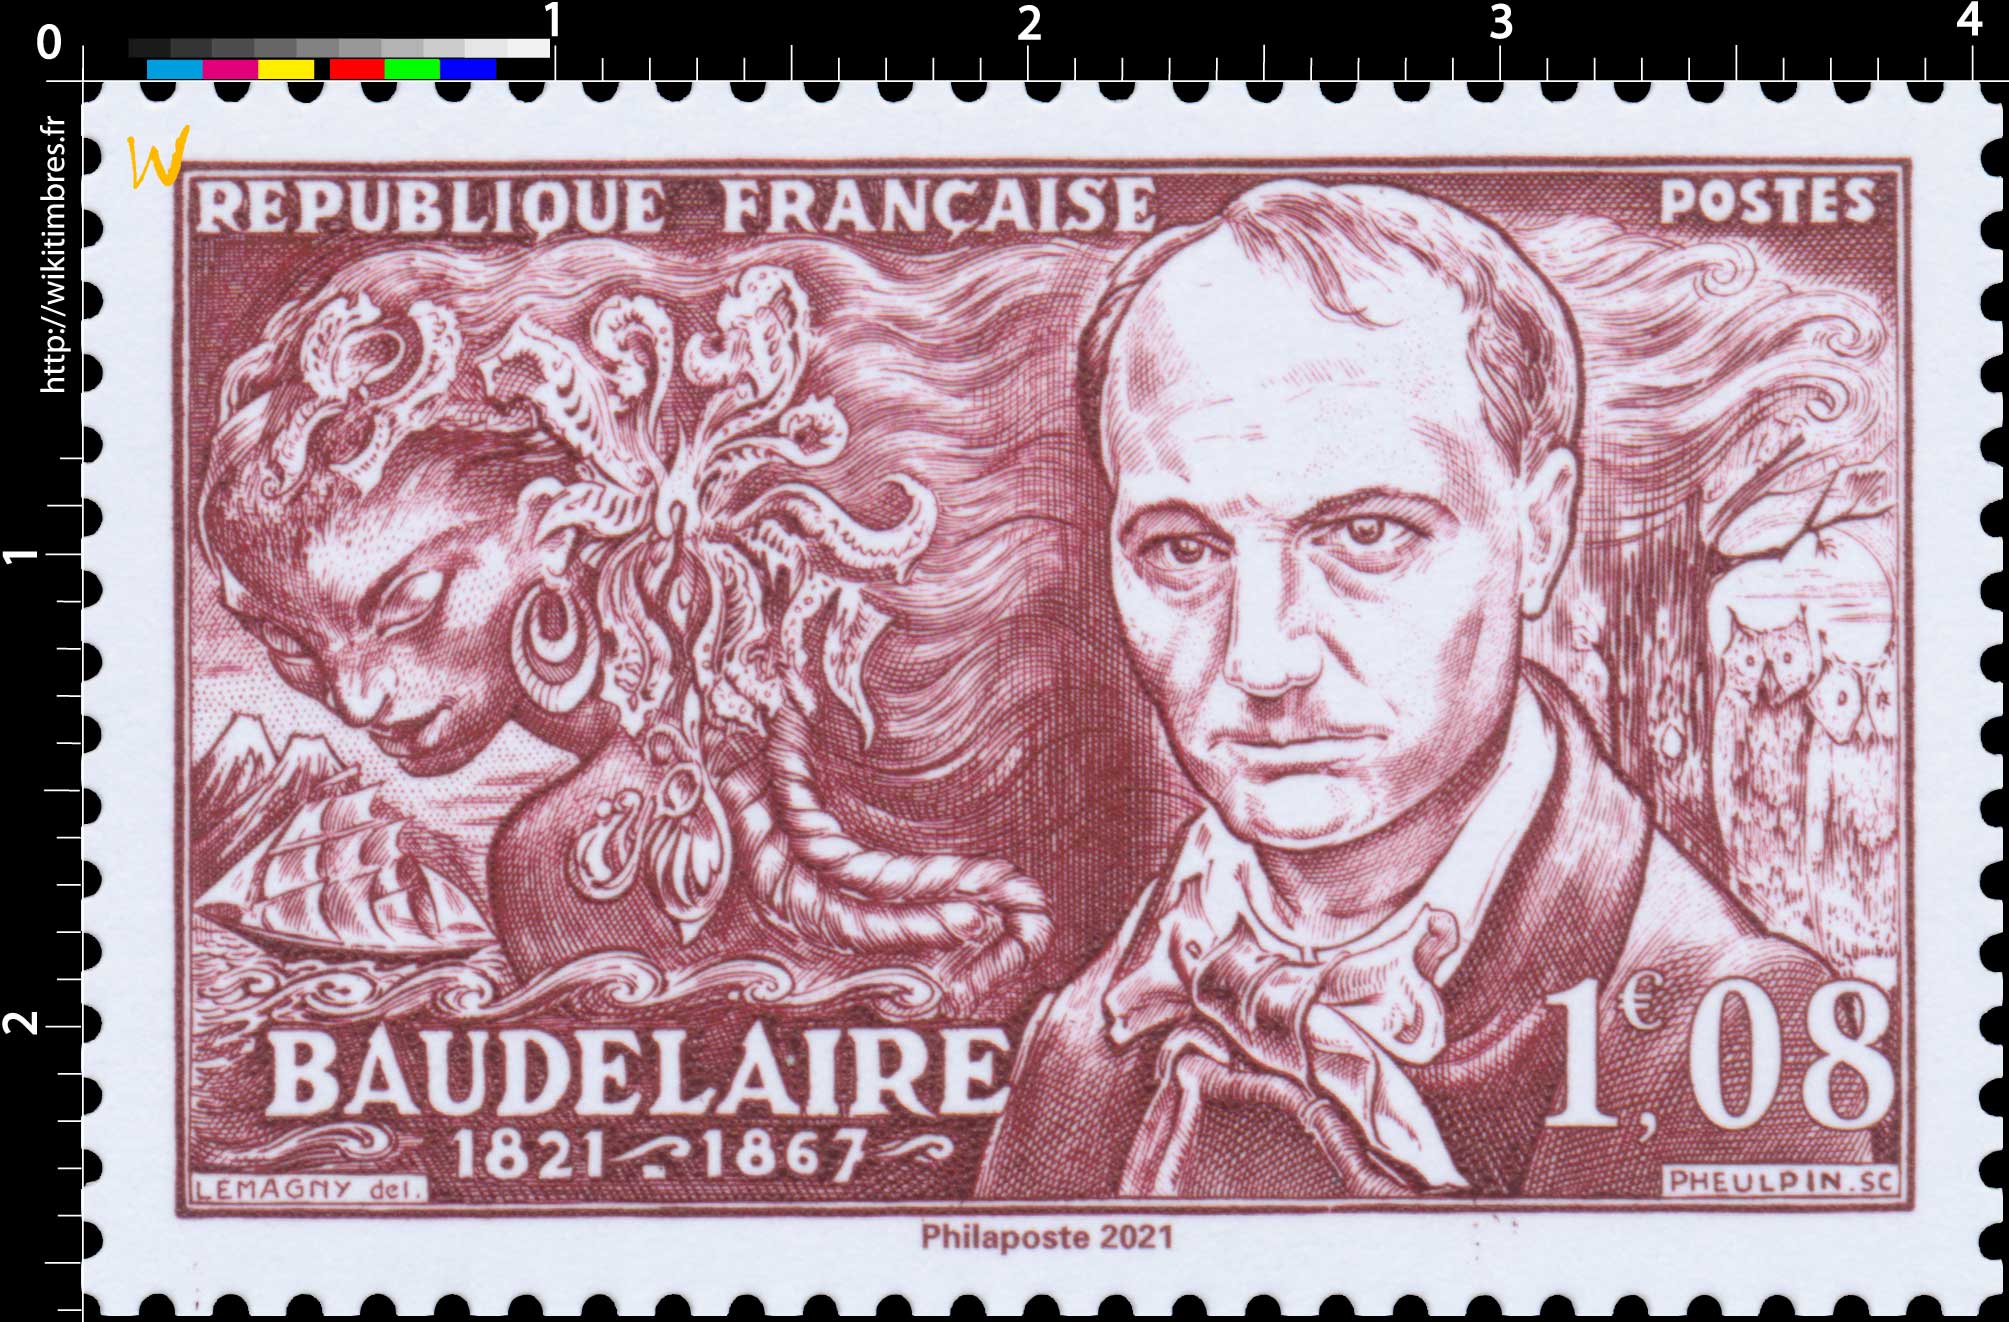 2021 Patrimoine de France - BAUDELAIRE 1821-1867